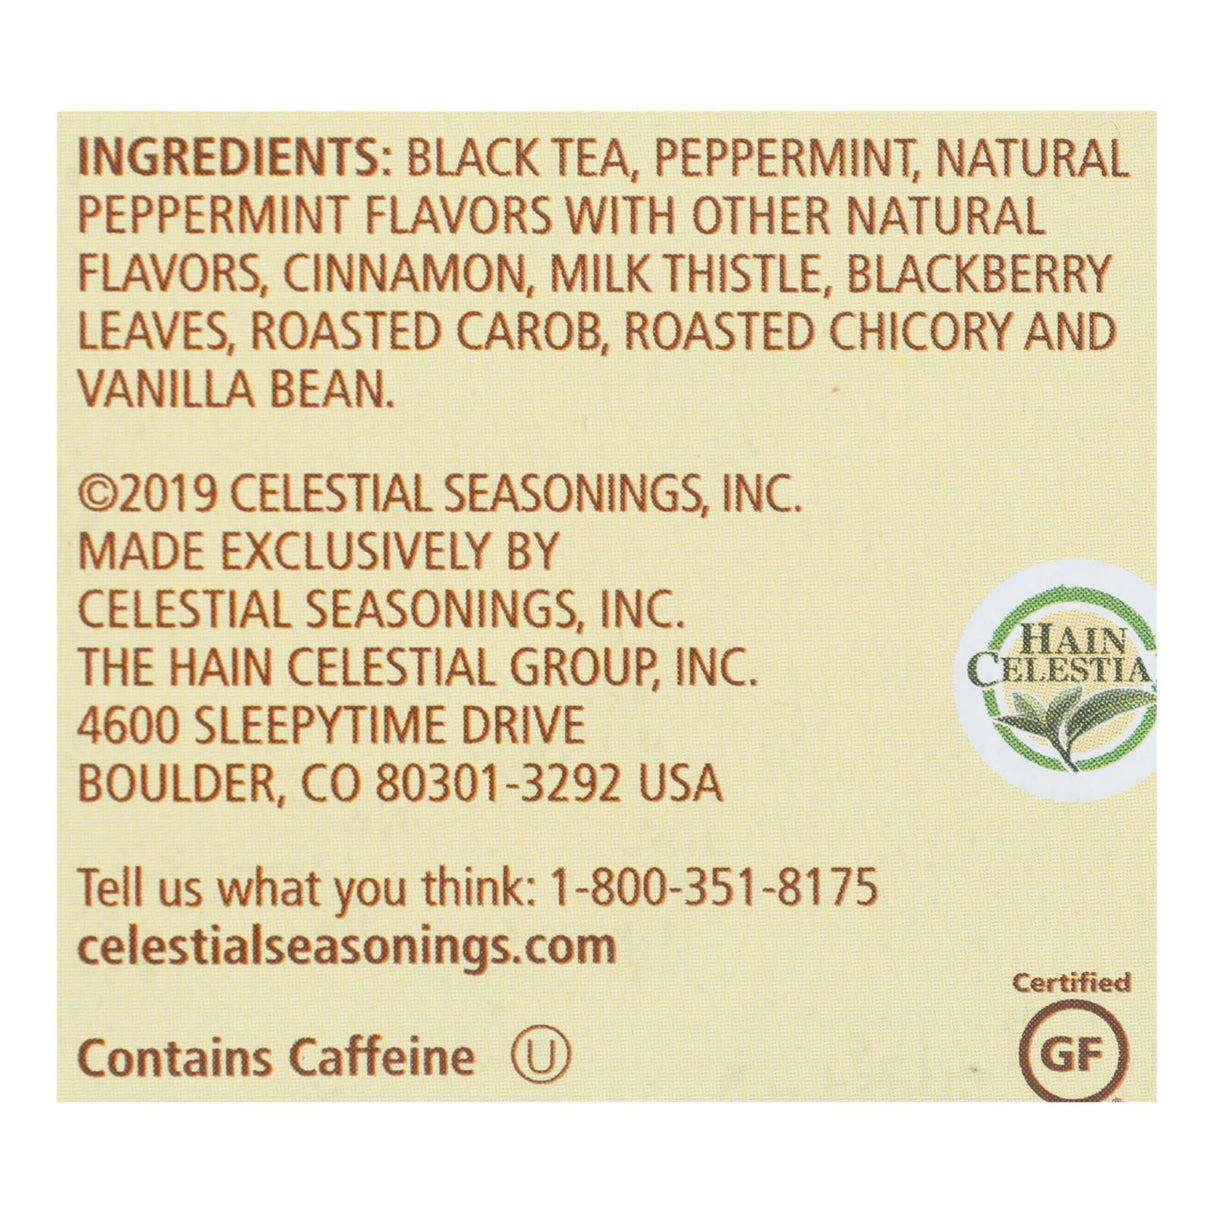 Celestial Seasonings Peppermint Peak Herbal Tea, 20-Count Bags (Pack of 6) - Cozy Farm 